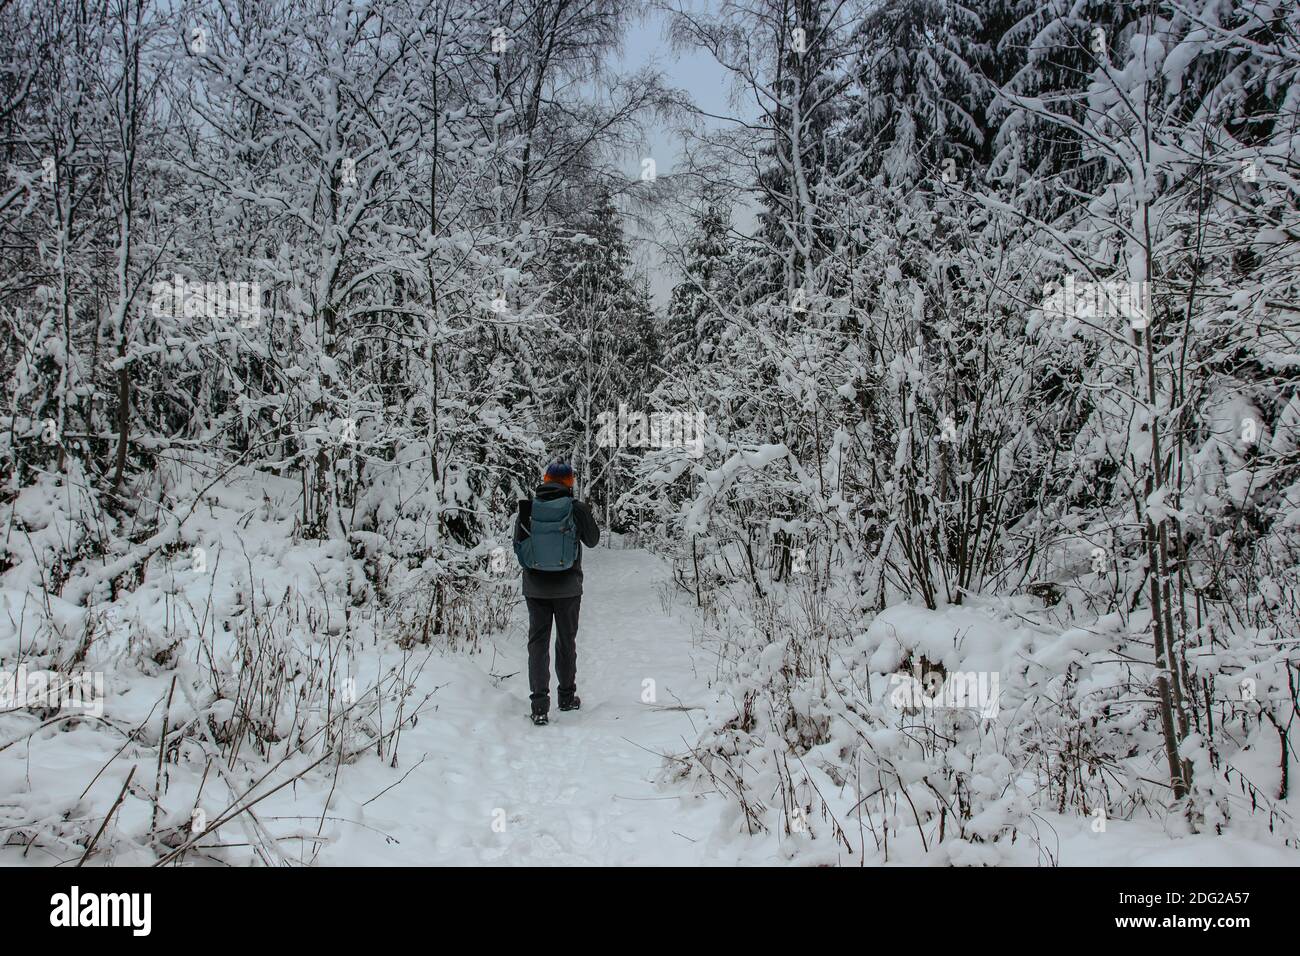 Solo Backpacker Wandern in gefrorenen verschneiten Wald.Winter Panorama-Landschaft mit Bäumen bedeckt mit Schnee, Nebel.malerische und wunderschöne Winterszene.kalt Stockfoto